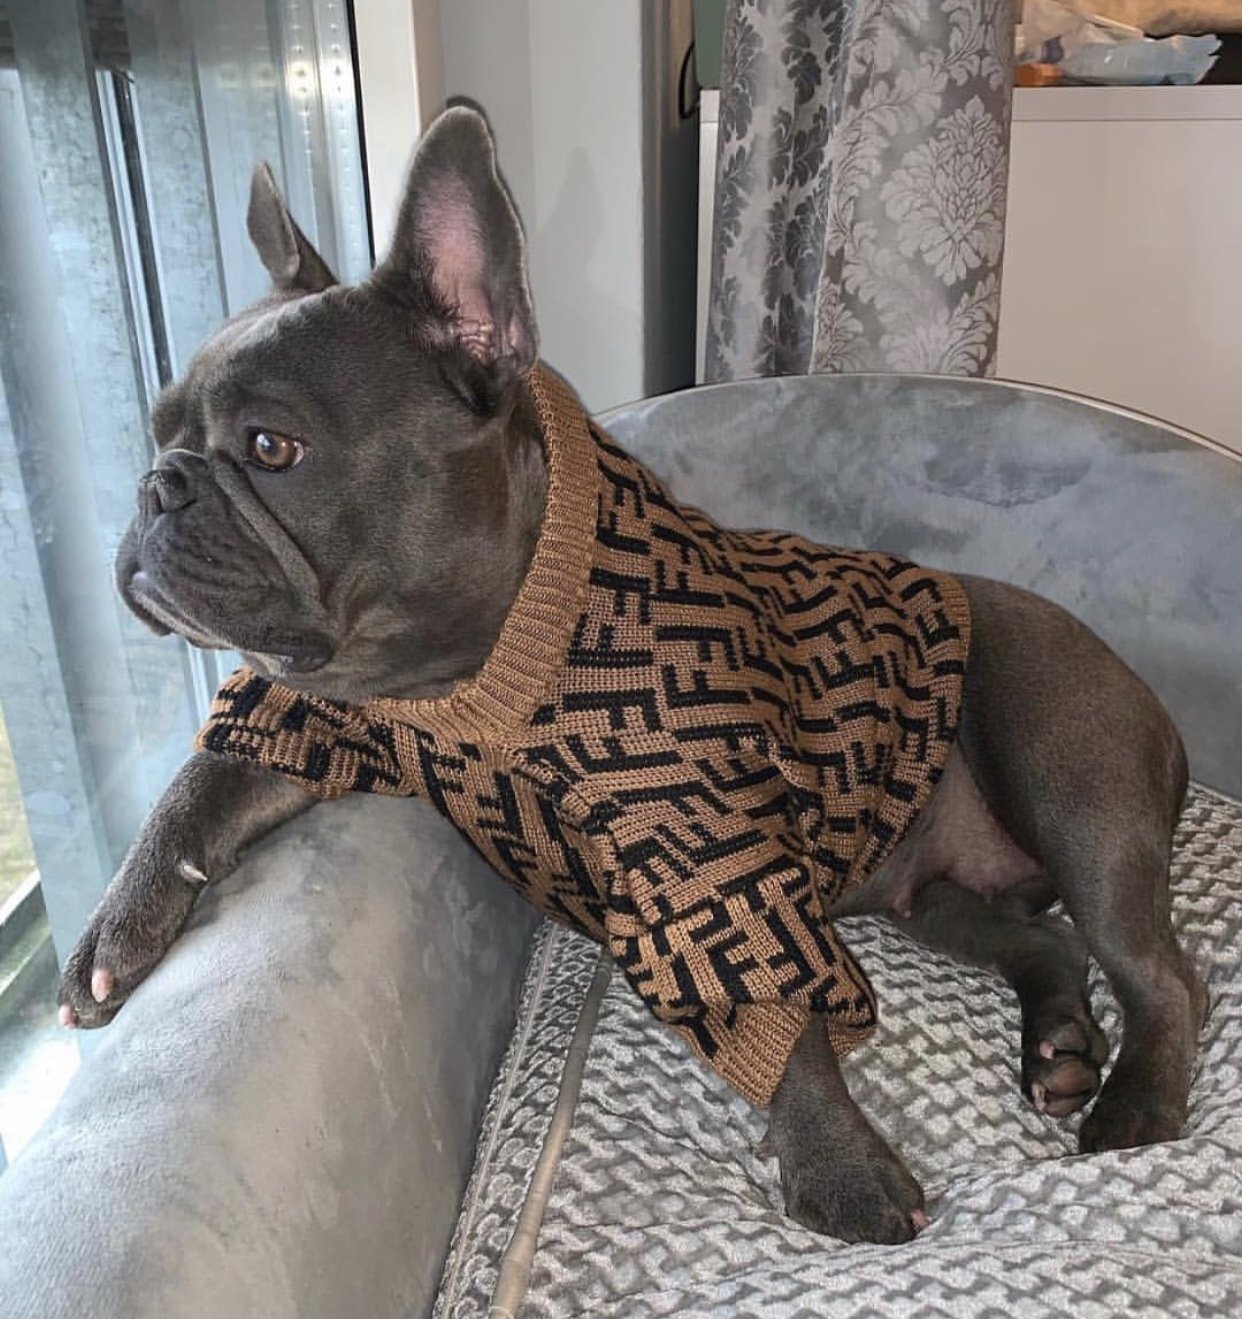 Louis Pup Monogram Knit Sweater